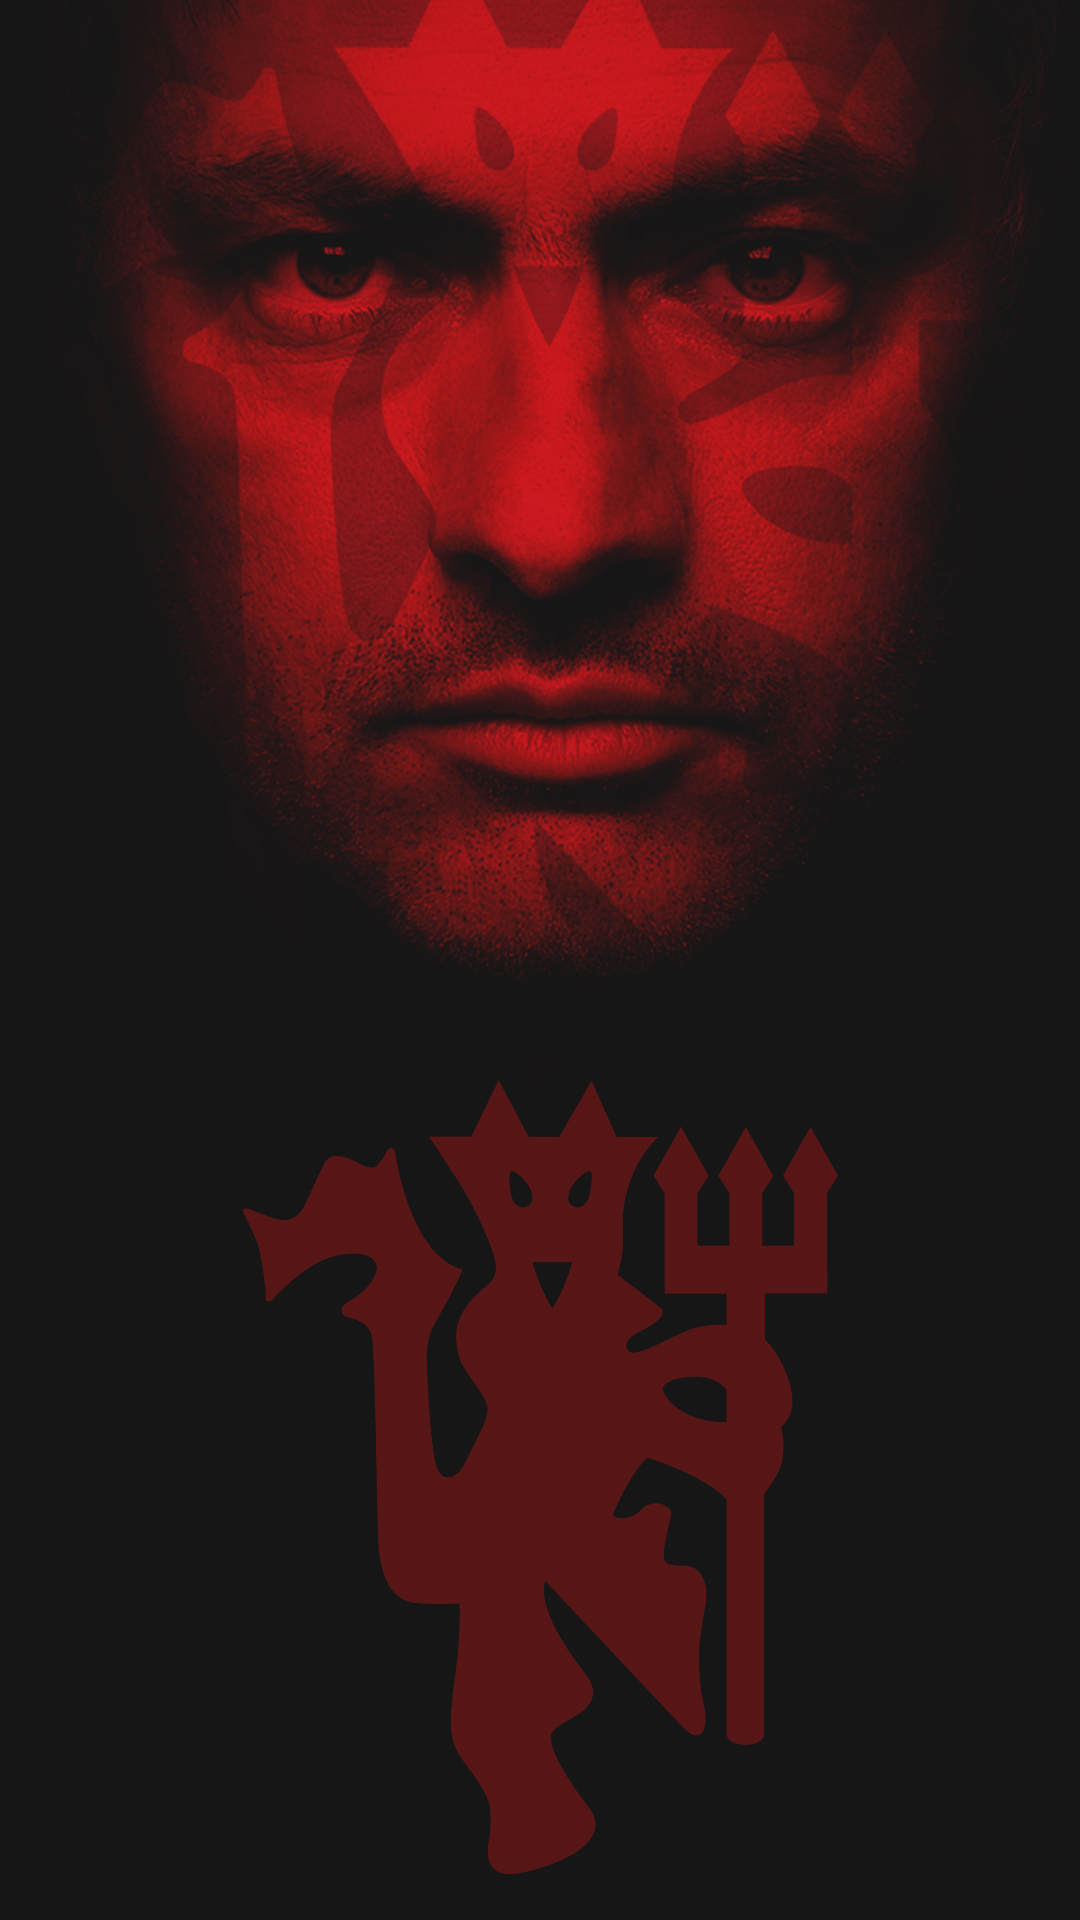 Best Manchester United Wallpaper Hd - Jose Mourinho Manchester United Iphone , HD Wallpaper & Backgrounds